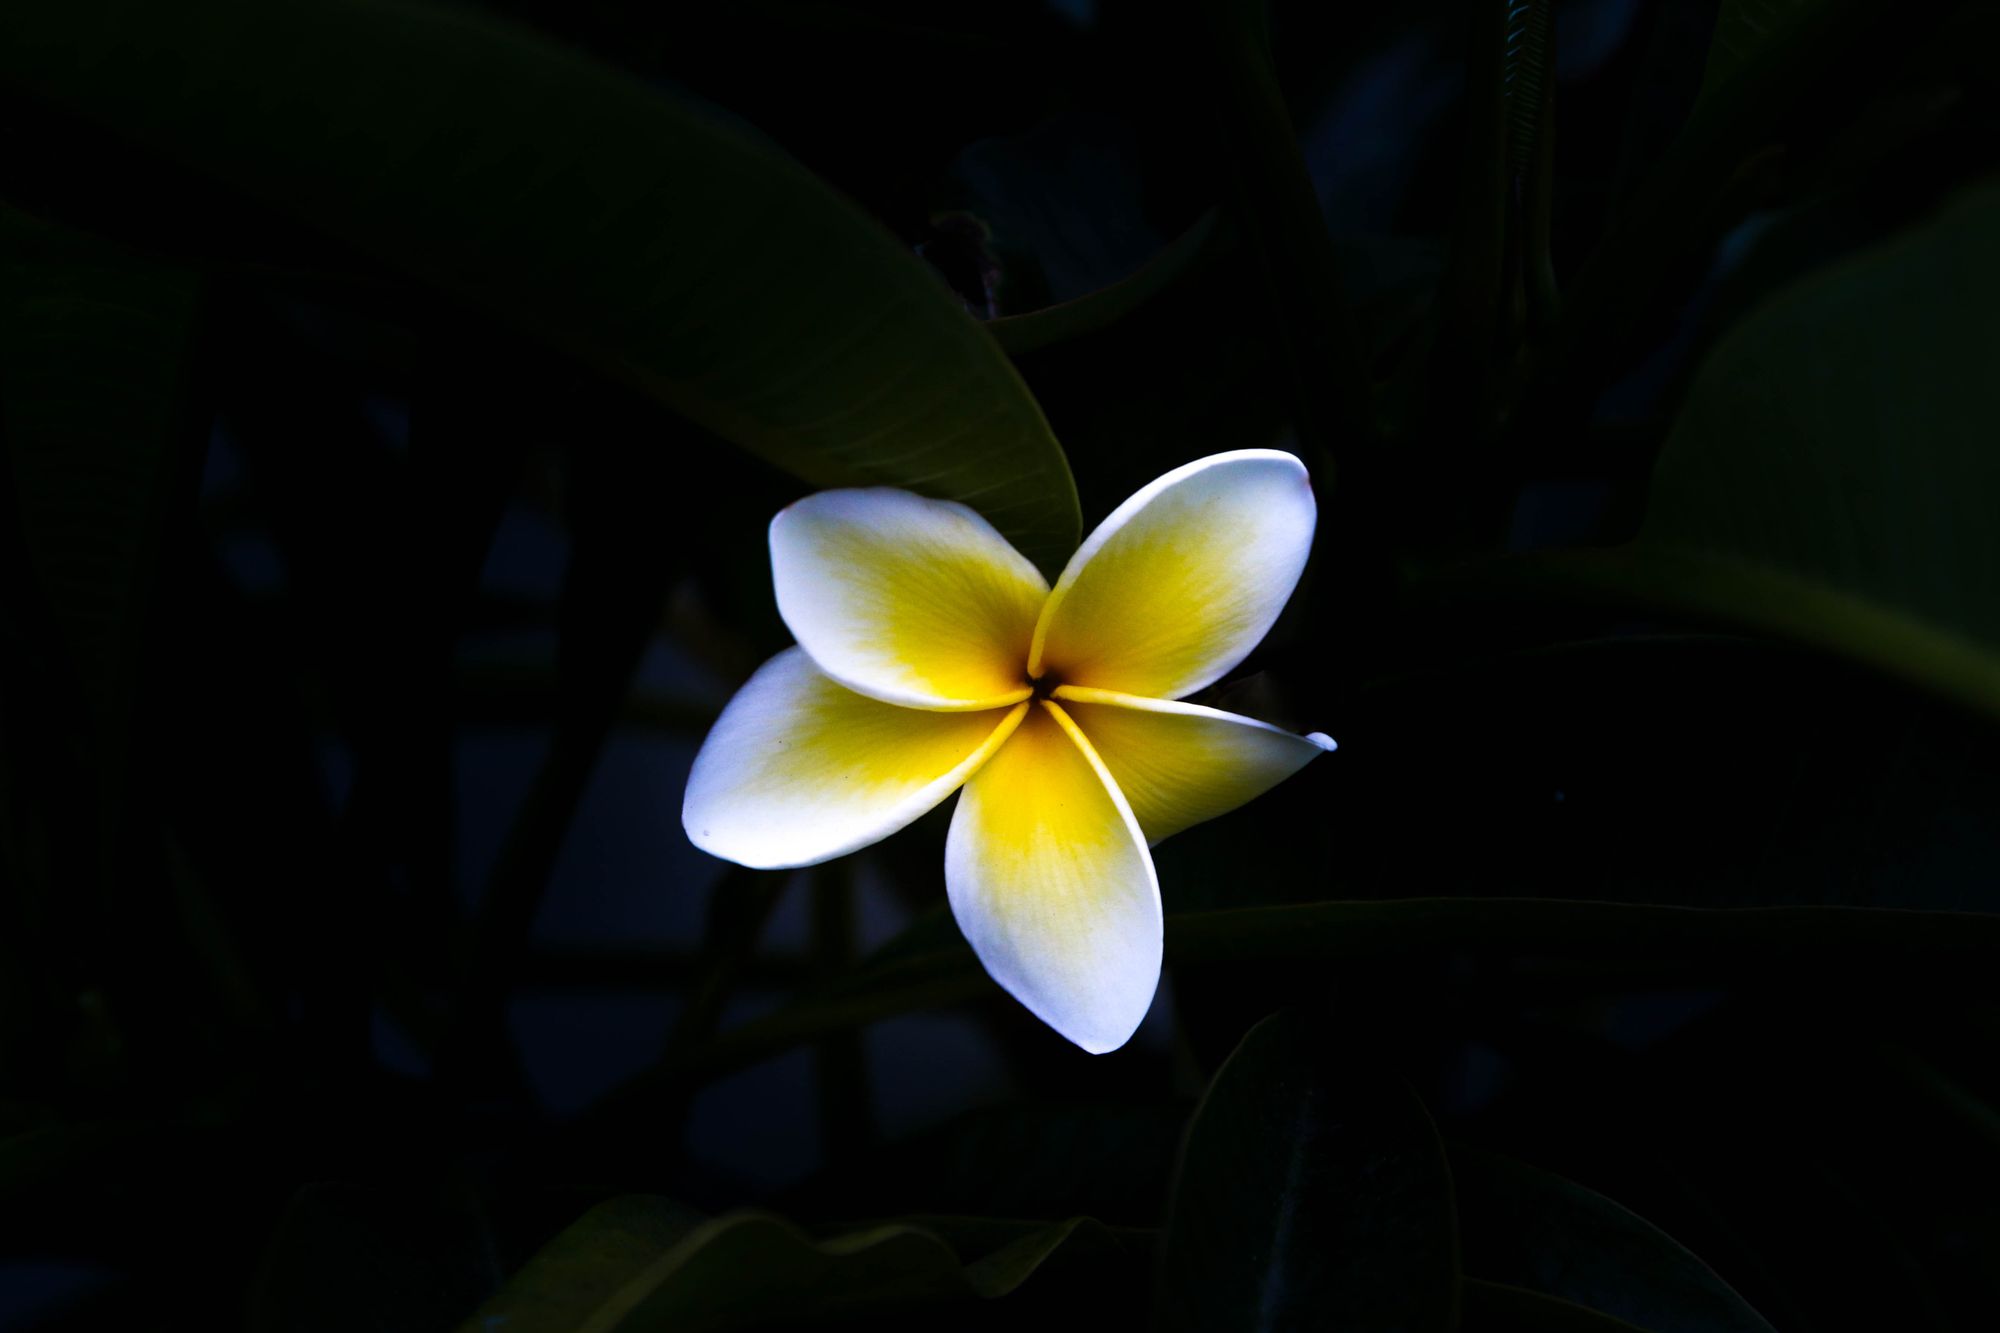 Hakalau Meditation: Ancient Hawaiian Huna